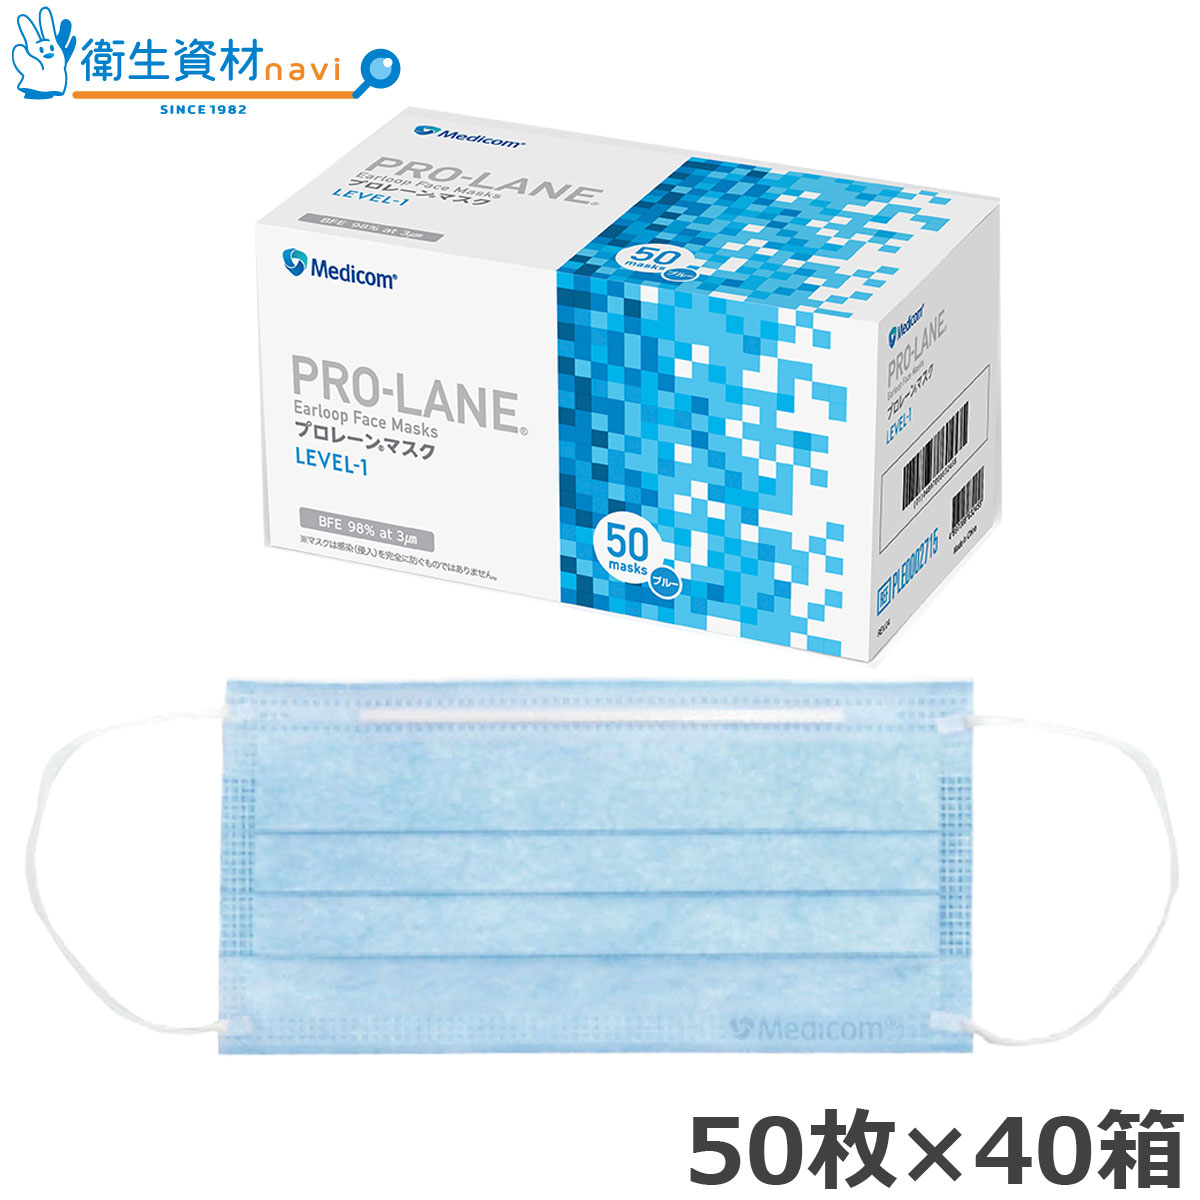 PRO-LANE(プロレーン) マスク LEVEL-1 ブルー レギュラーサイズ PLE0002715 (2,000枚)